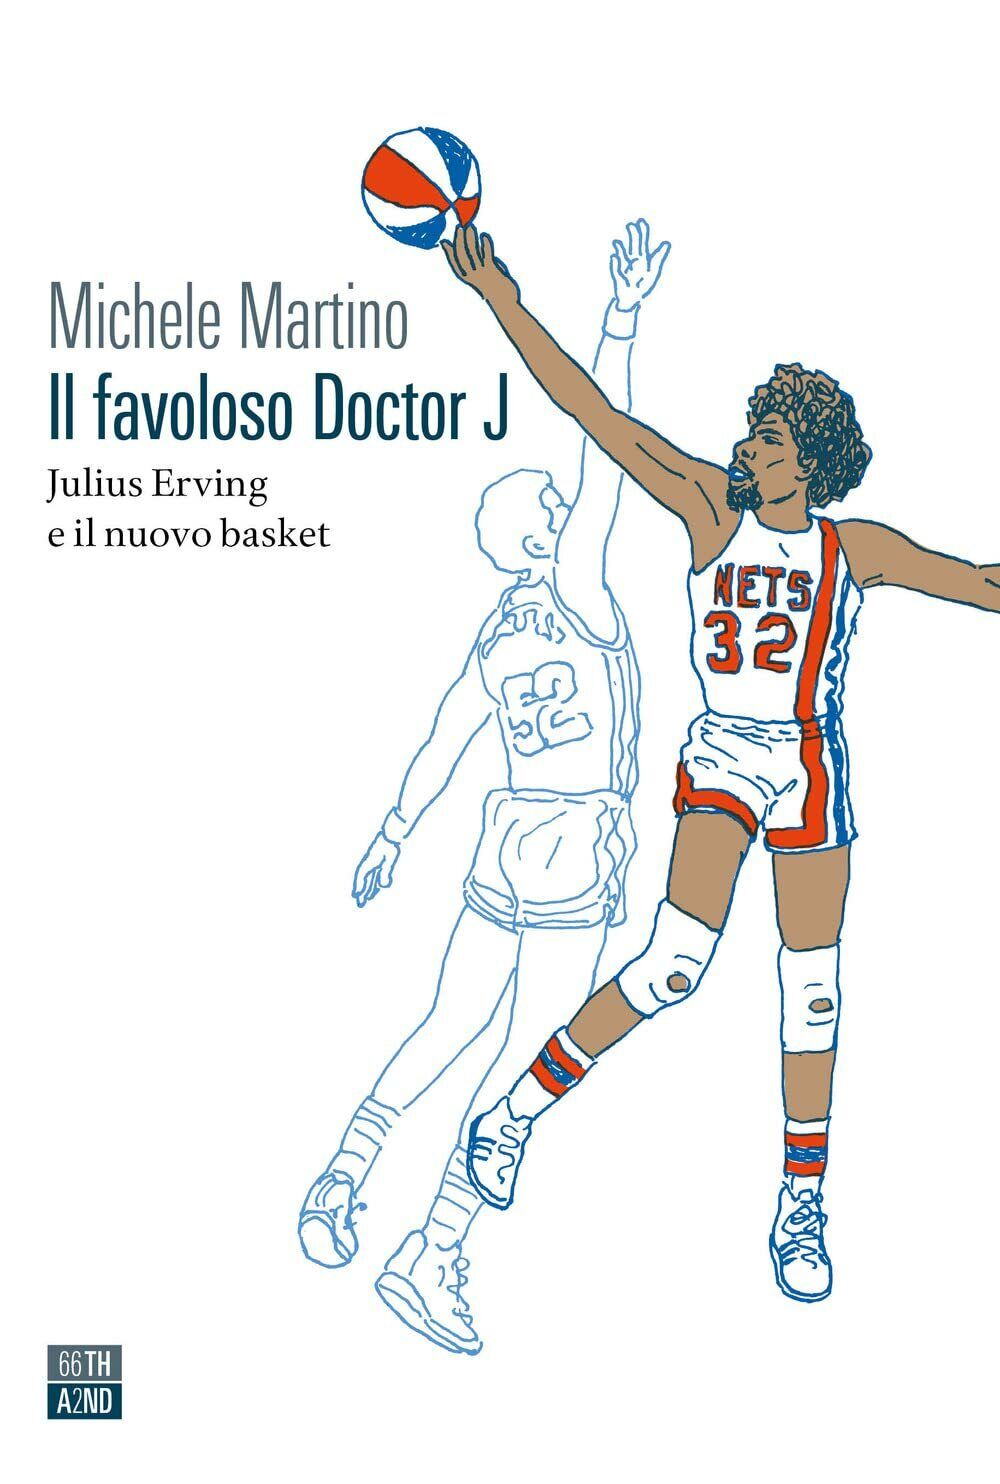 Il favoloso Doctor J. - Michele Martino - 66thand2nd, 2022 libro usato